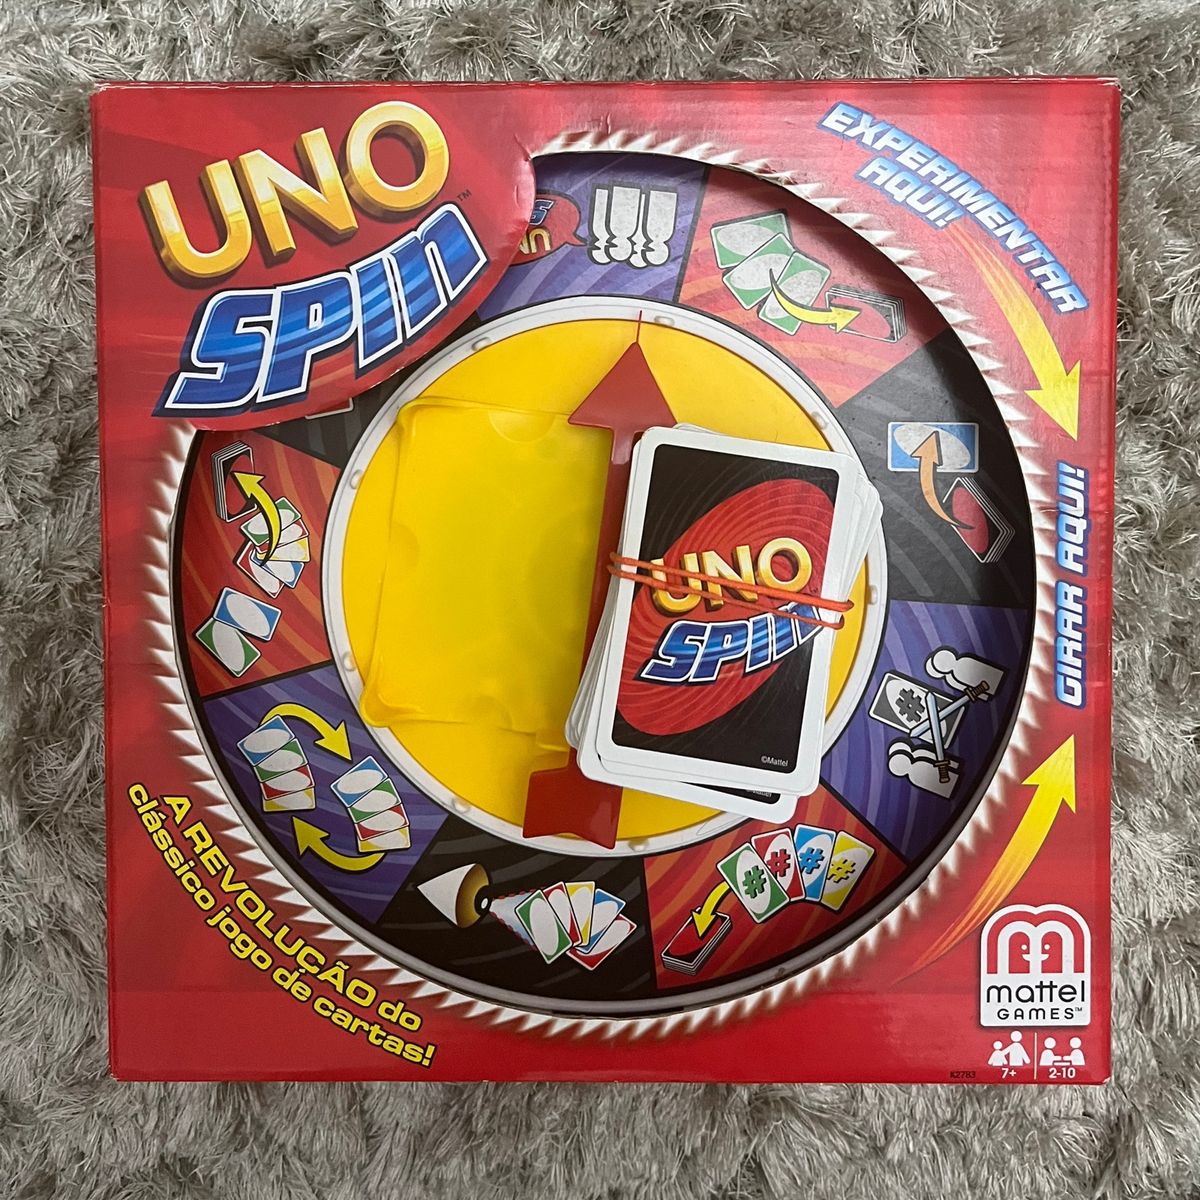 Mattel Games UNO Spin